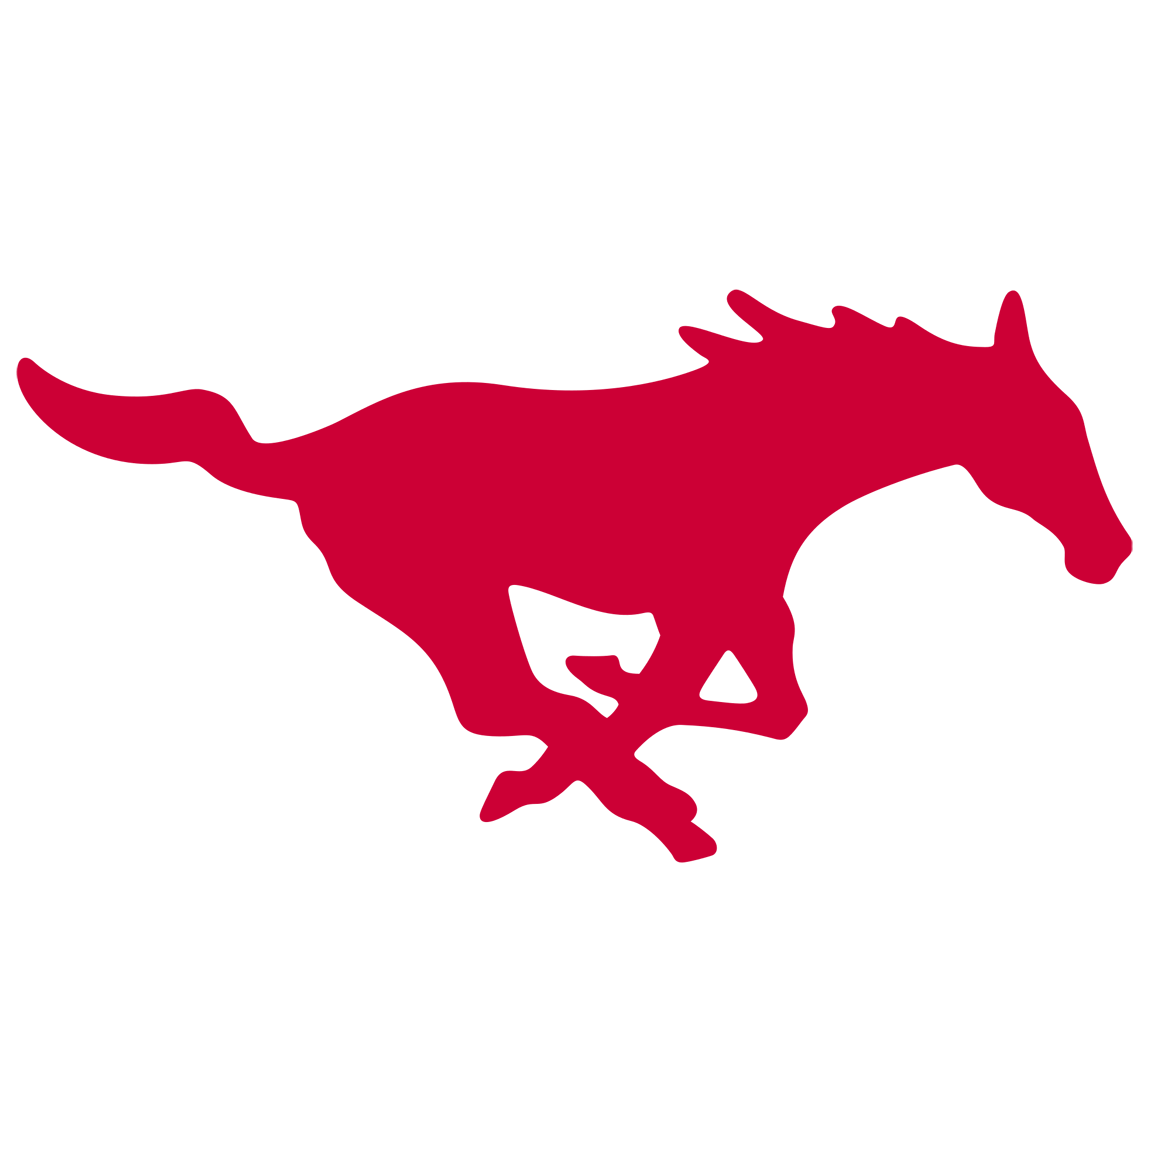 Southern Methodist (SMU) Mustang logo